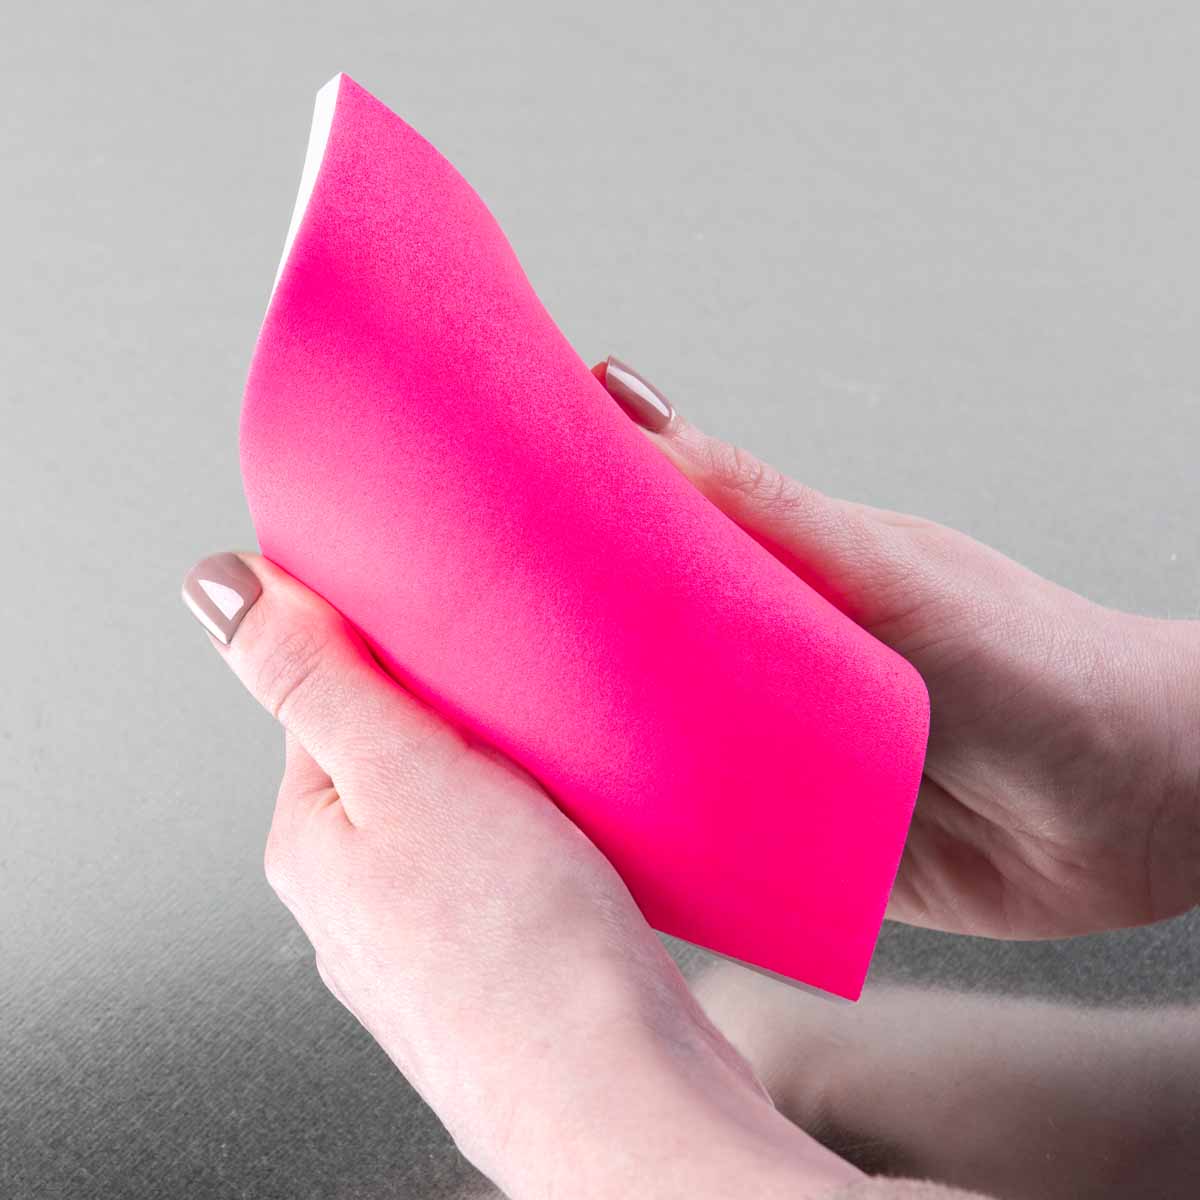 PlaidFX Nuclear Neon Flexible Acrylic Paint - Killer Pink, 3 oz. - 36882